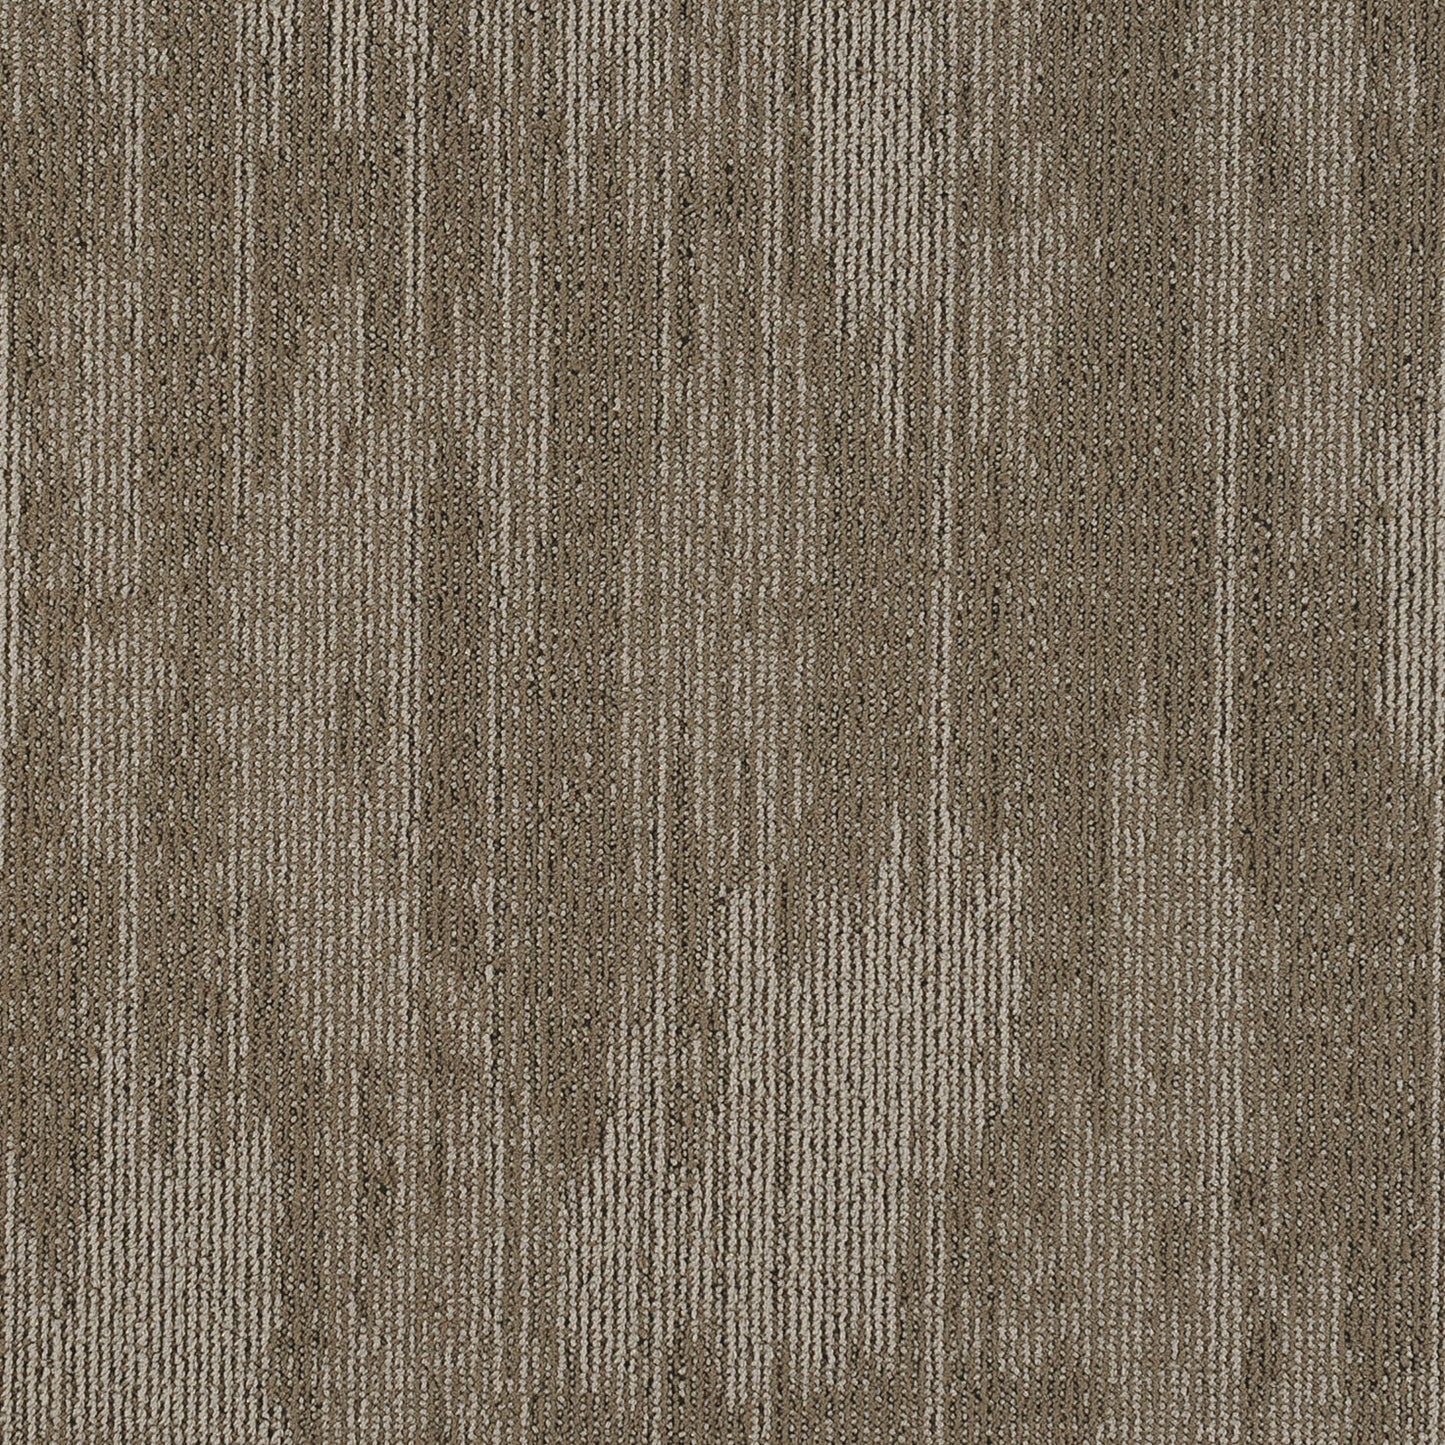 Carpet Tile - T861 DUNE